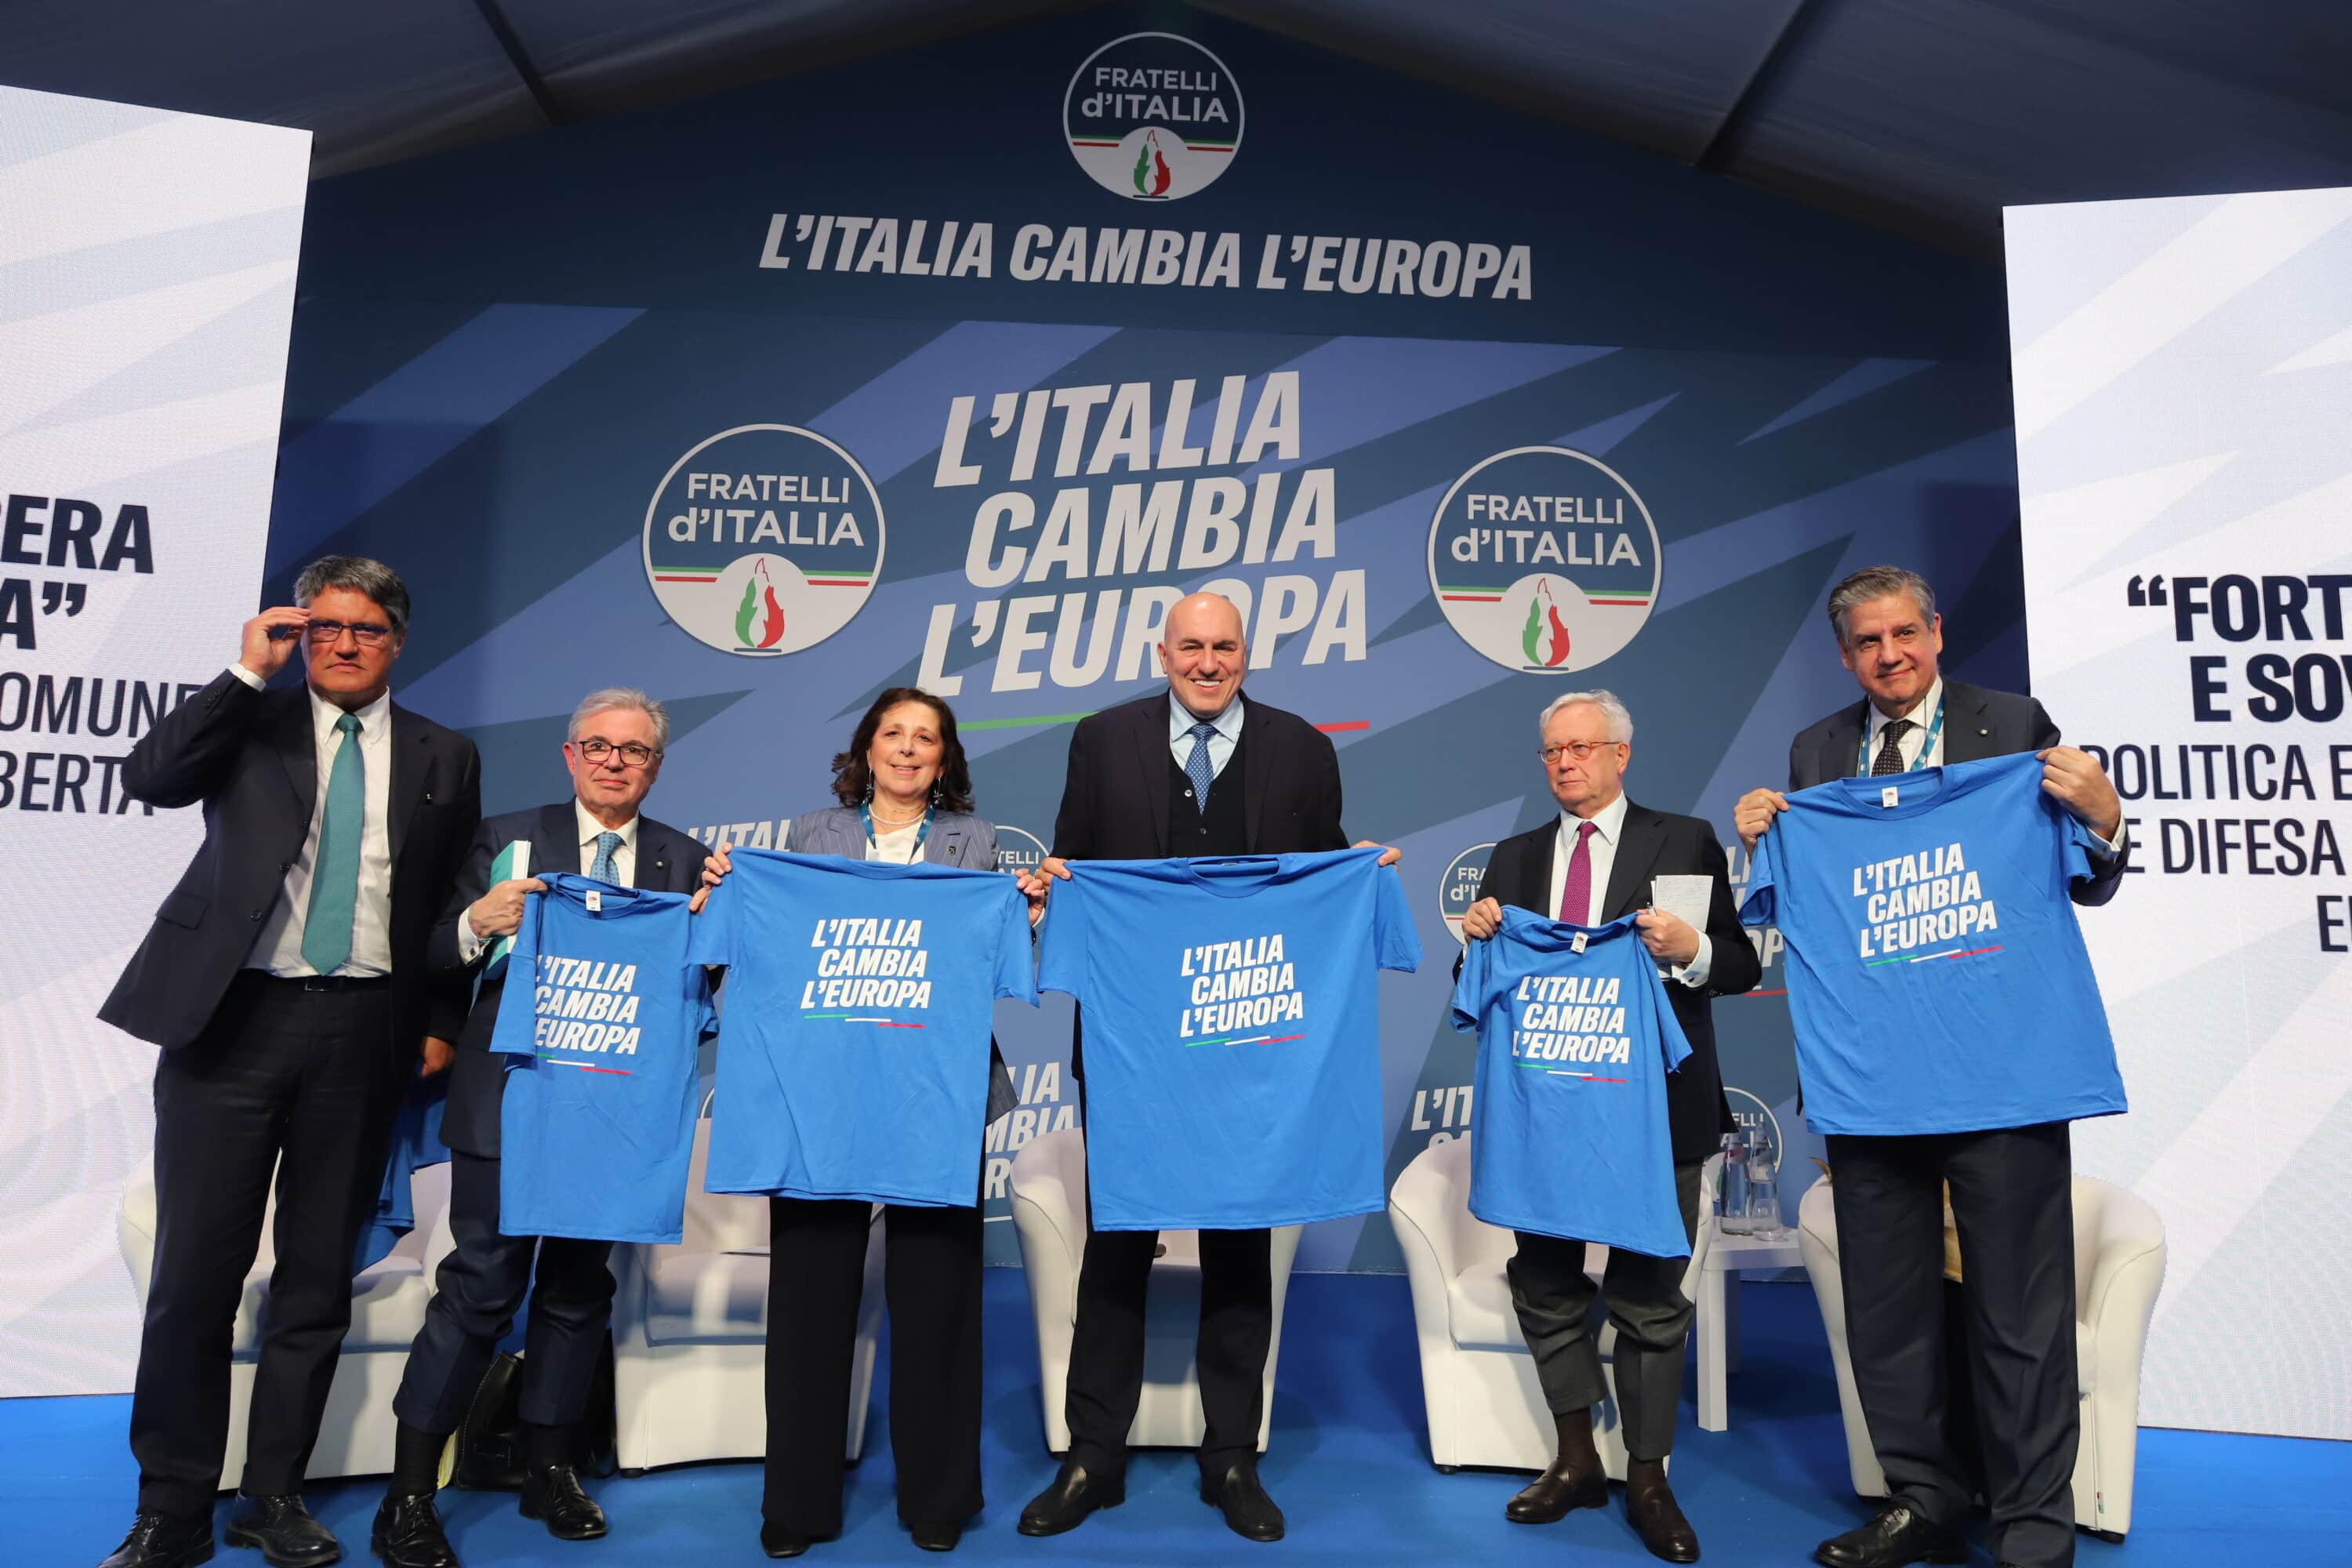 Fratelli d’Italia, il presidente di Leonardo e il dg della Cybersecurity nella foto di gruppo con la T-Shirt del partito in mano. È bufera